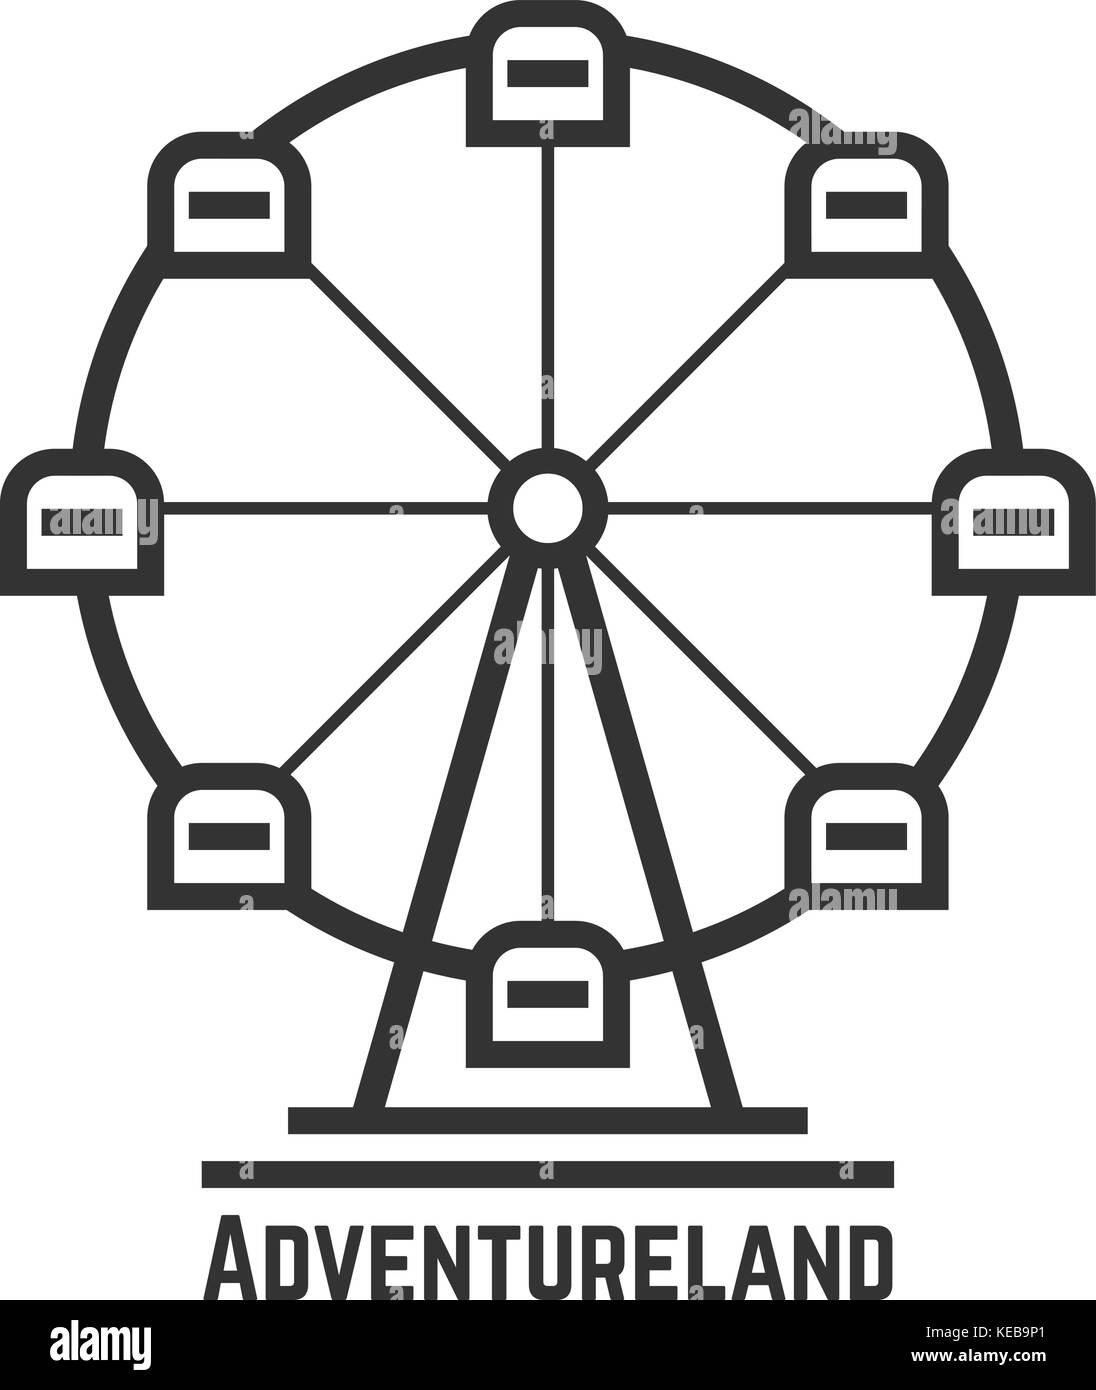 adventureland icon with black ferris wheel Stock Vector